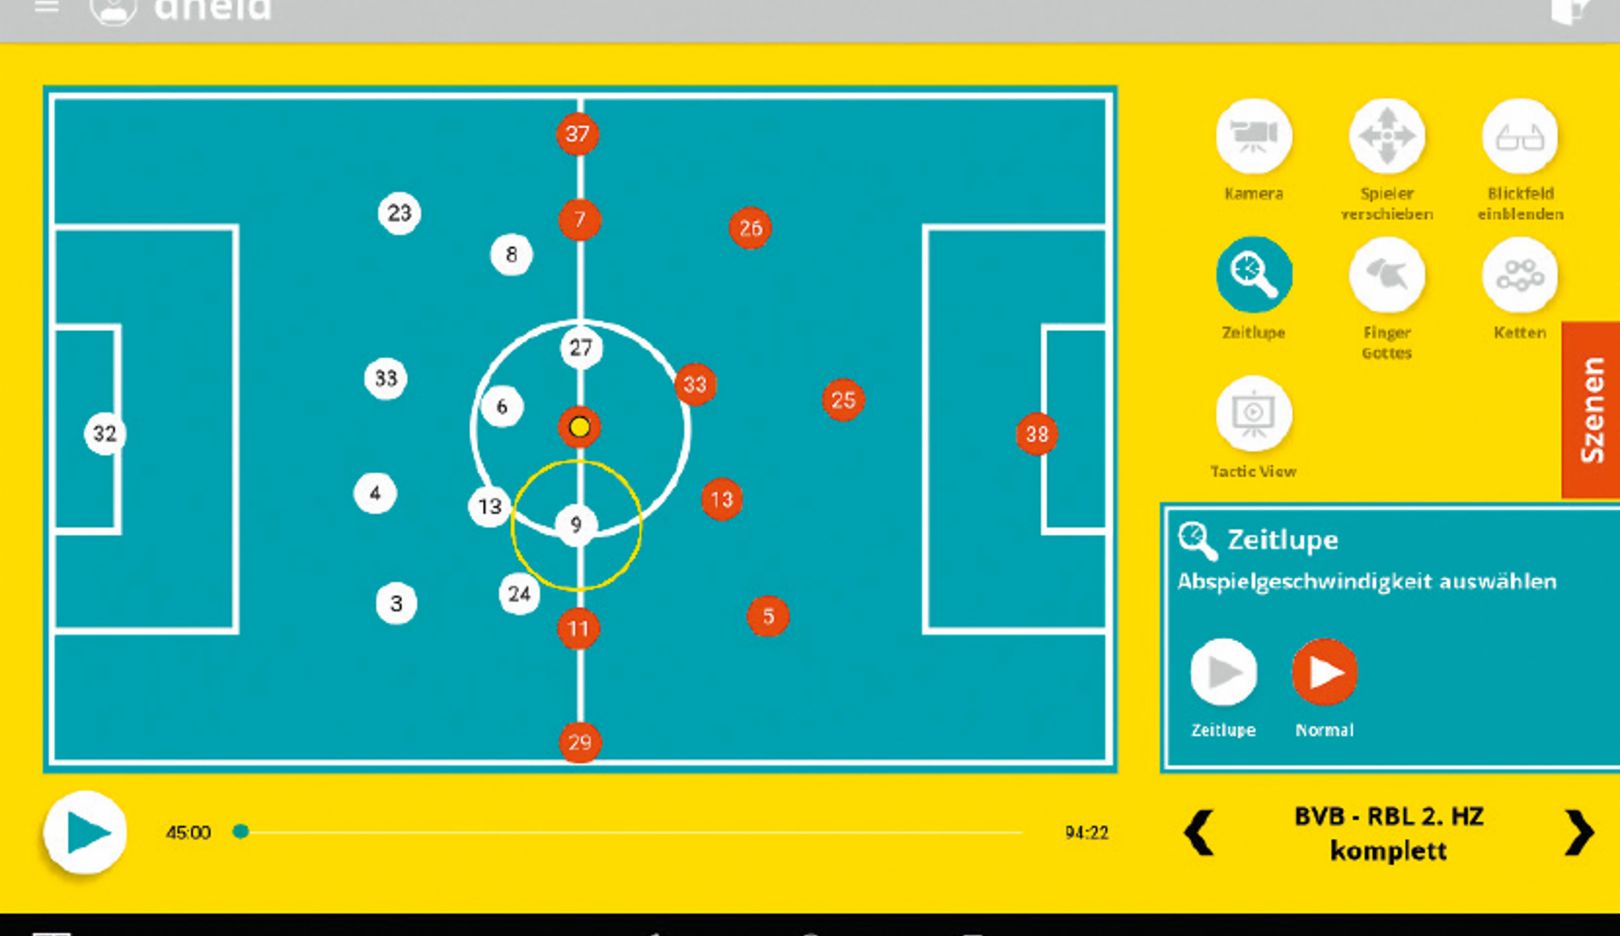 Preparación específica de cara al próximo contrincante: en el Soccerbot360 se pueden simular sistemas de juego. Así el jugador aprende a encontrar soluciones.